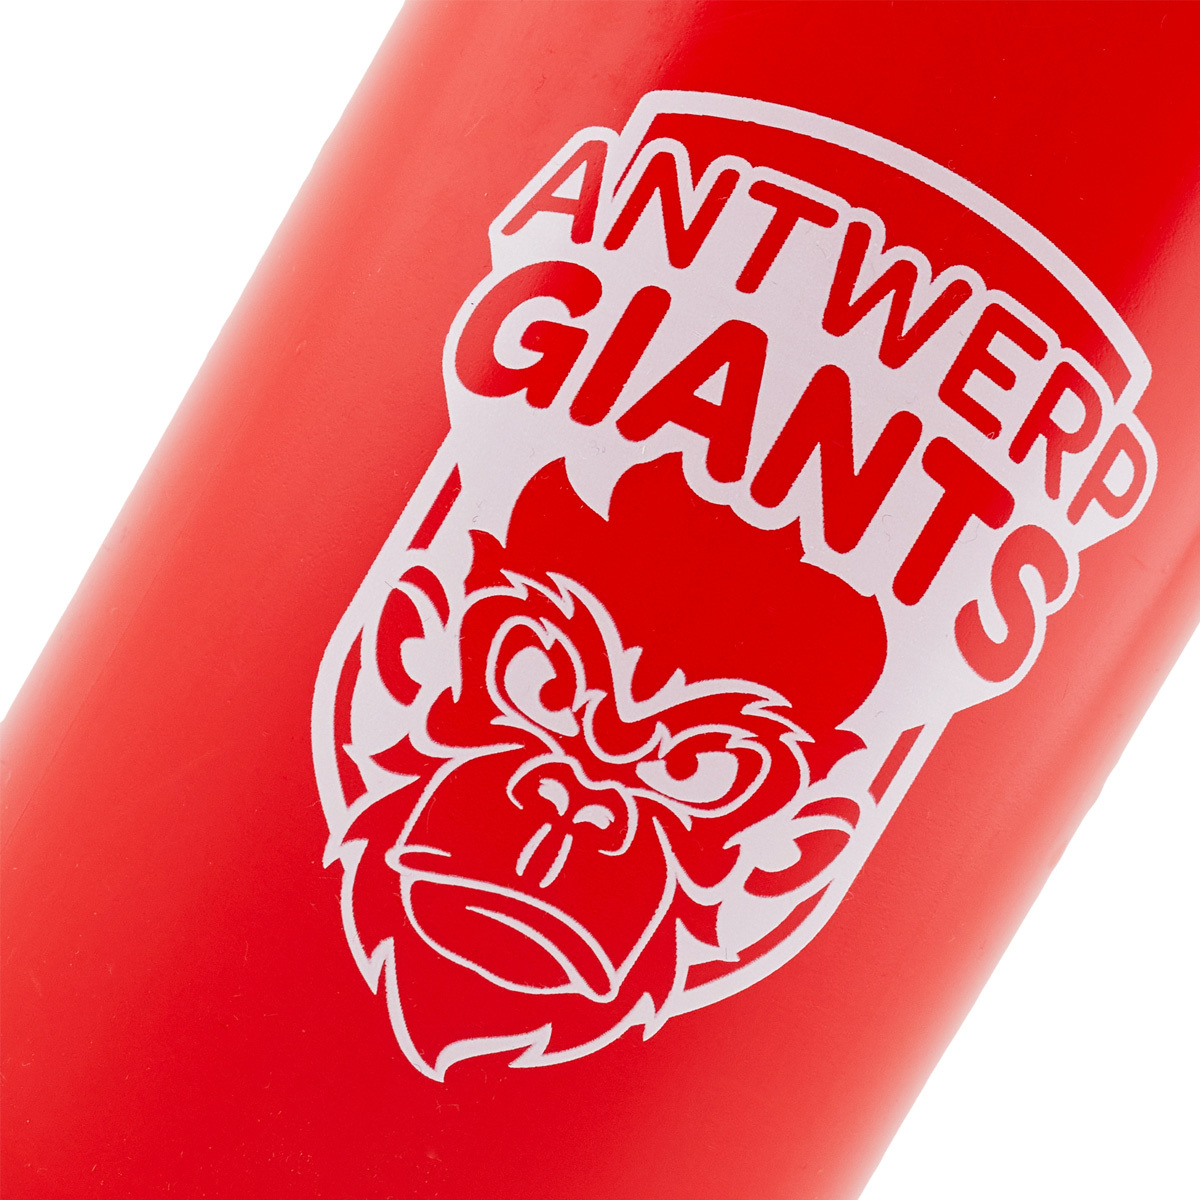 Drinking bottle Antwerp Giants - Copy